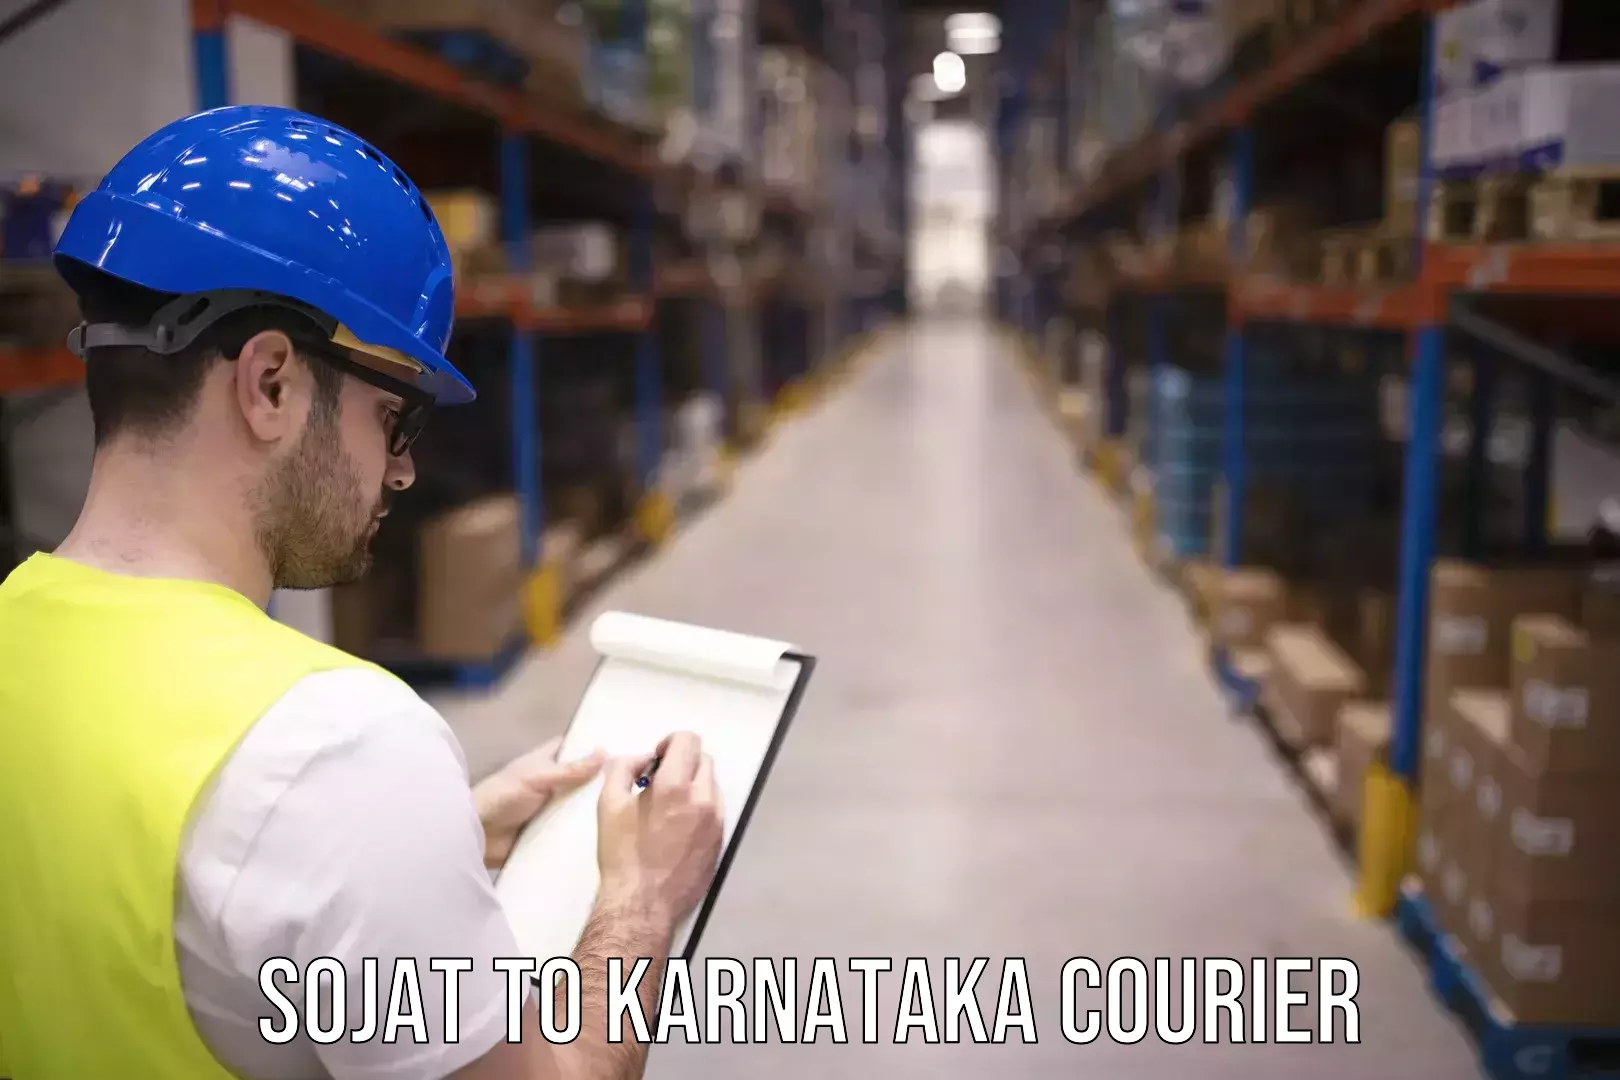 Multi-package shipping in Sojat to Karnataka